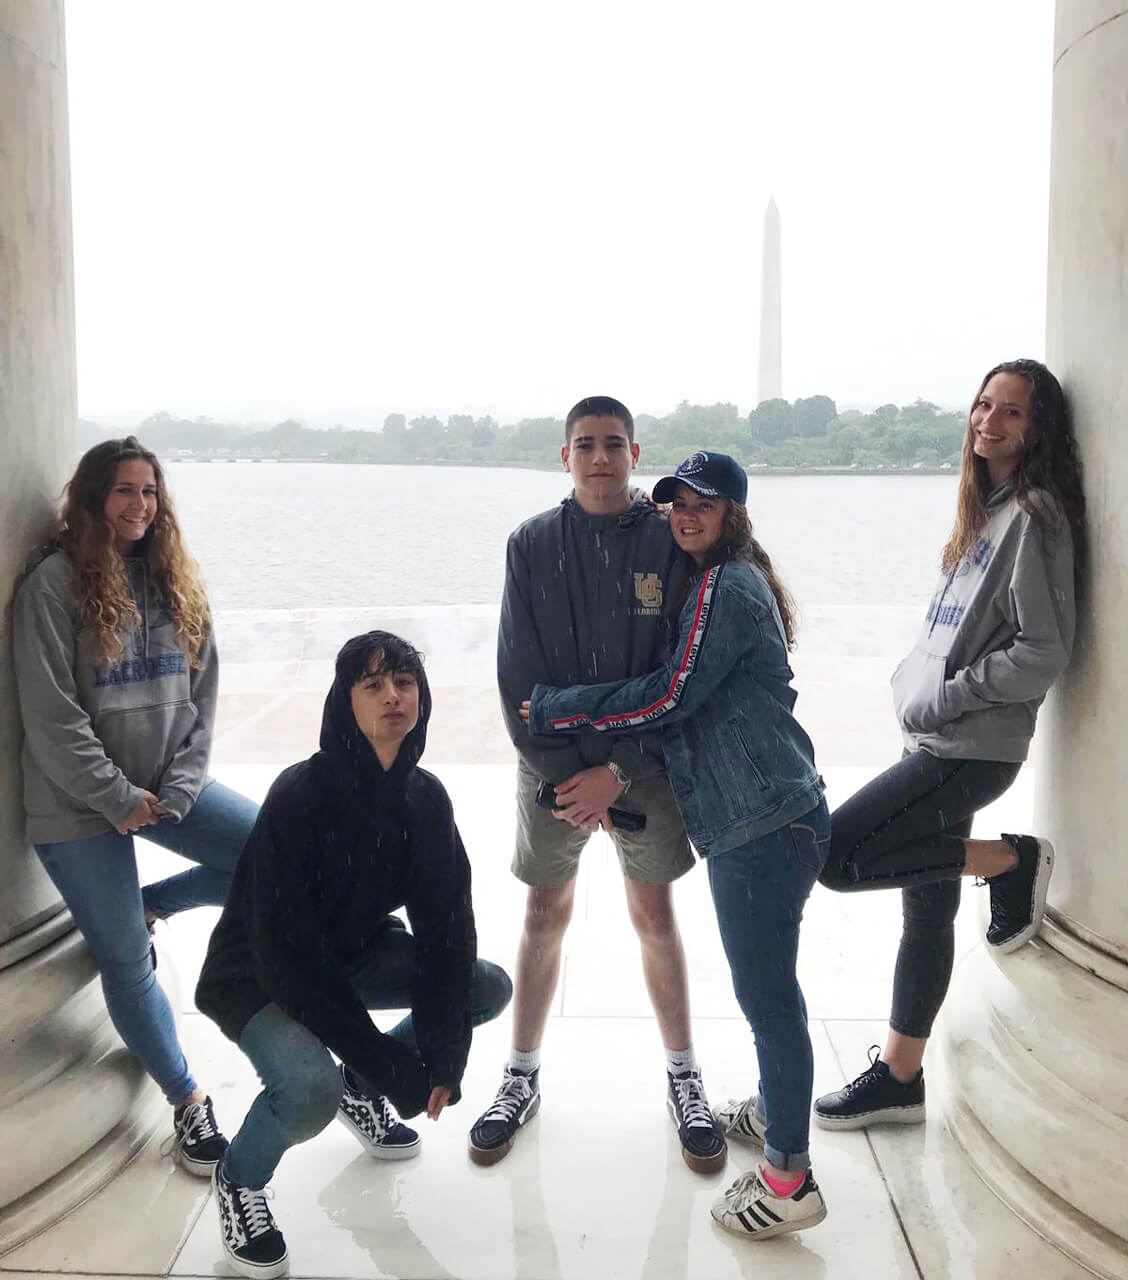 Cinco adolescentes, posando para foto y de fondo el obelisco del monumento a Washington.